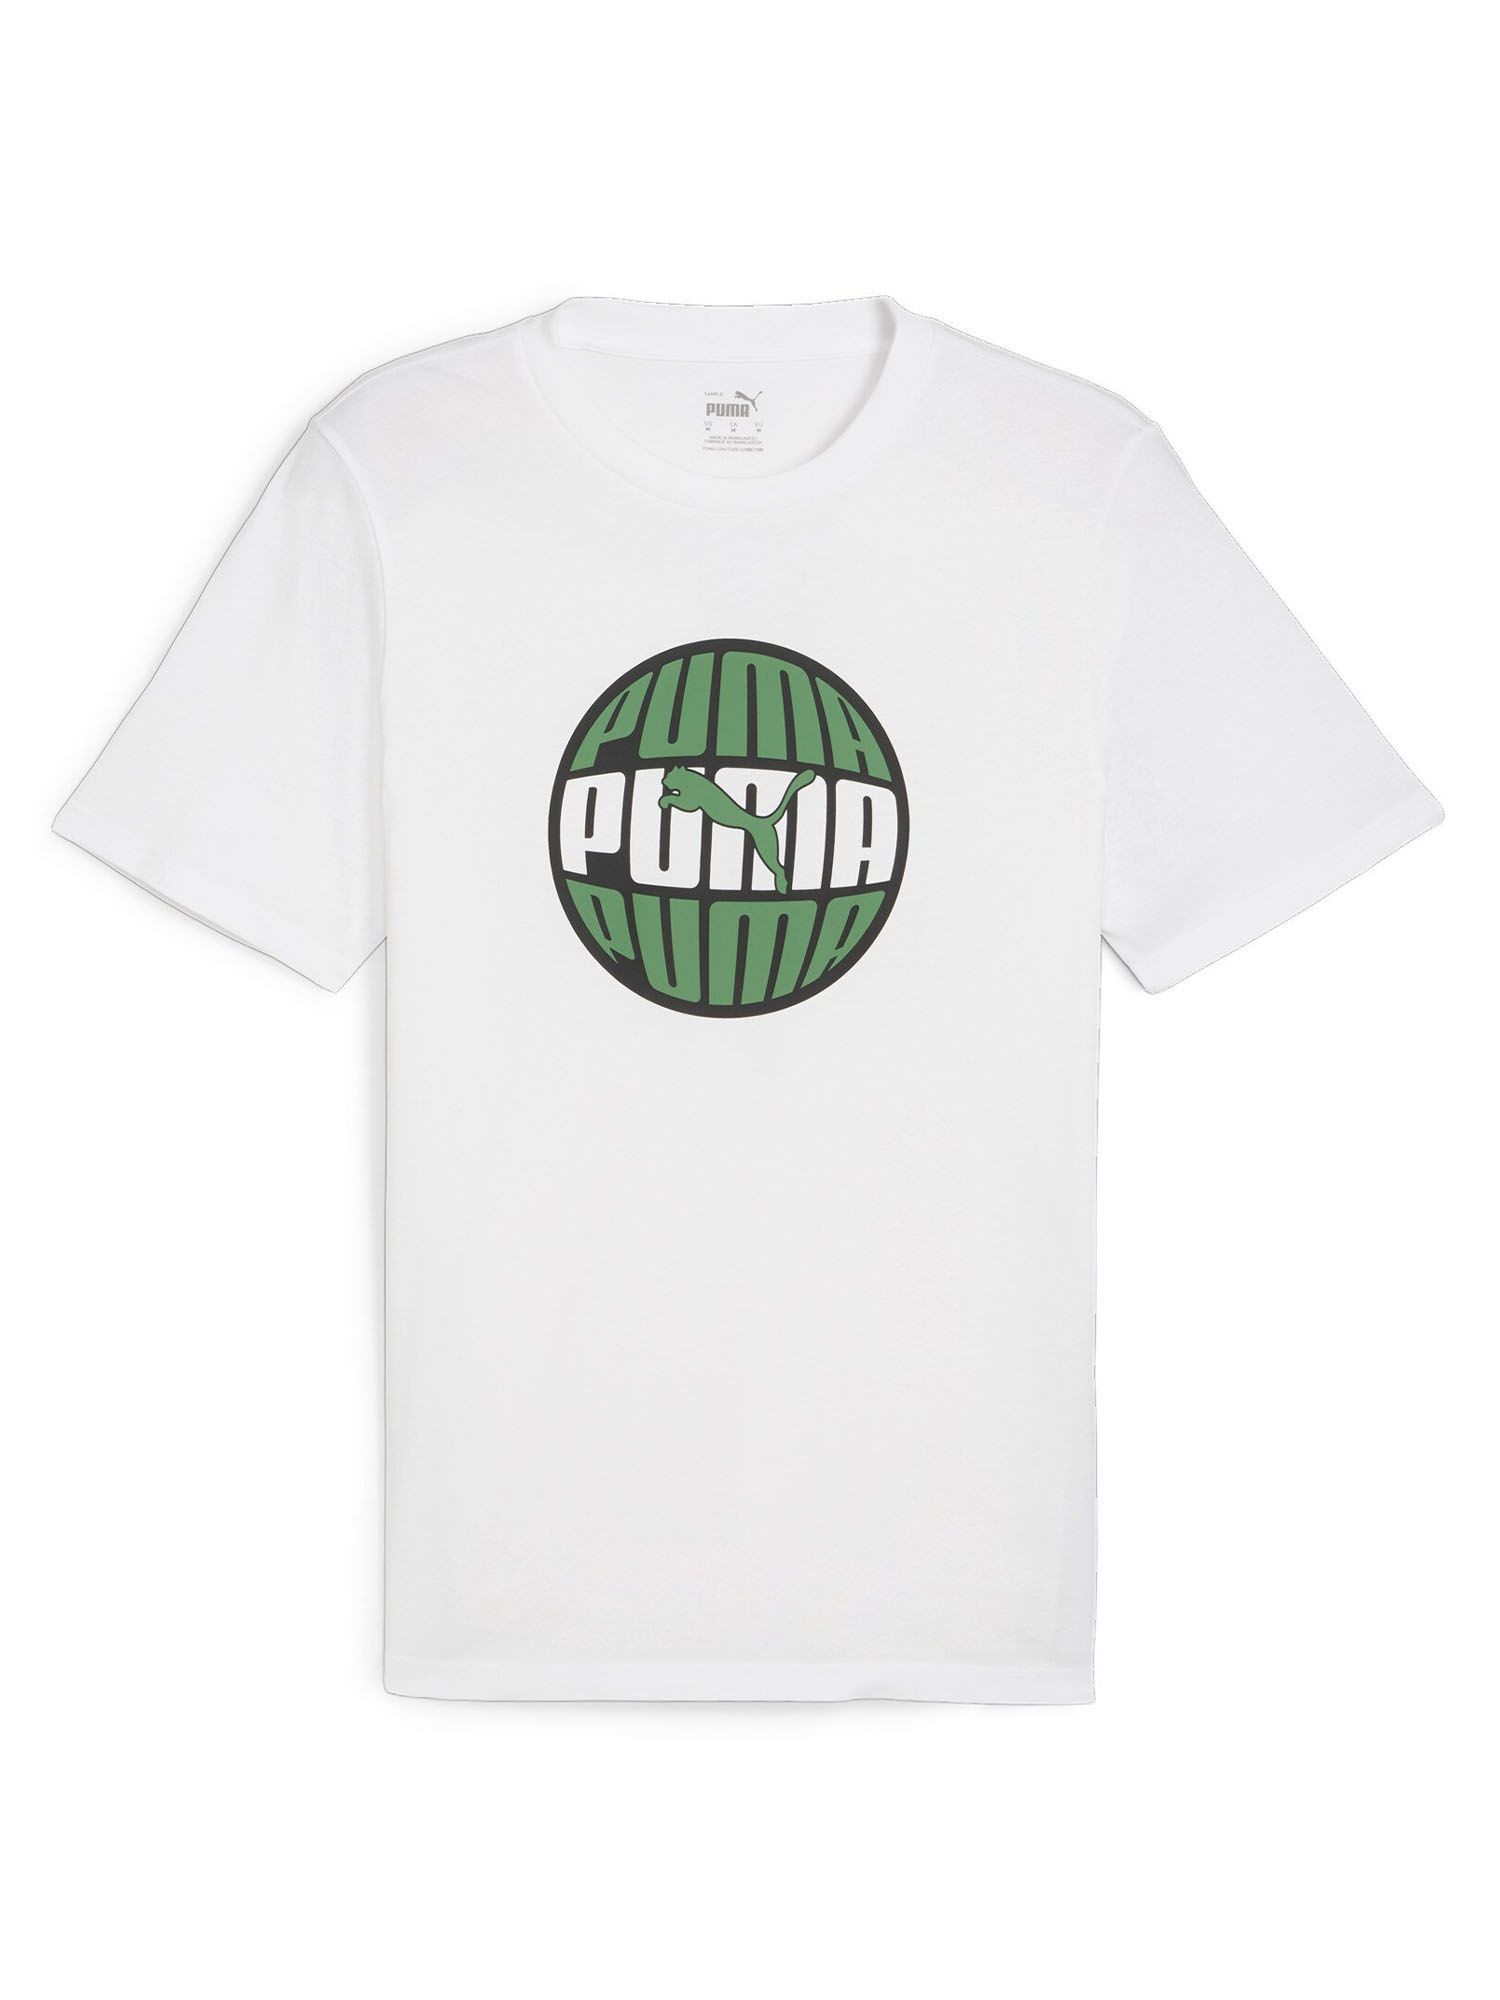 Puma Graphics Men's T-Shirt - White | eBay